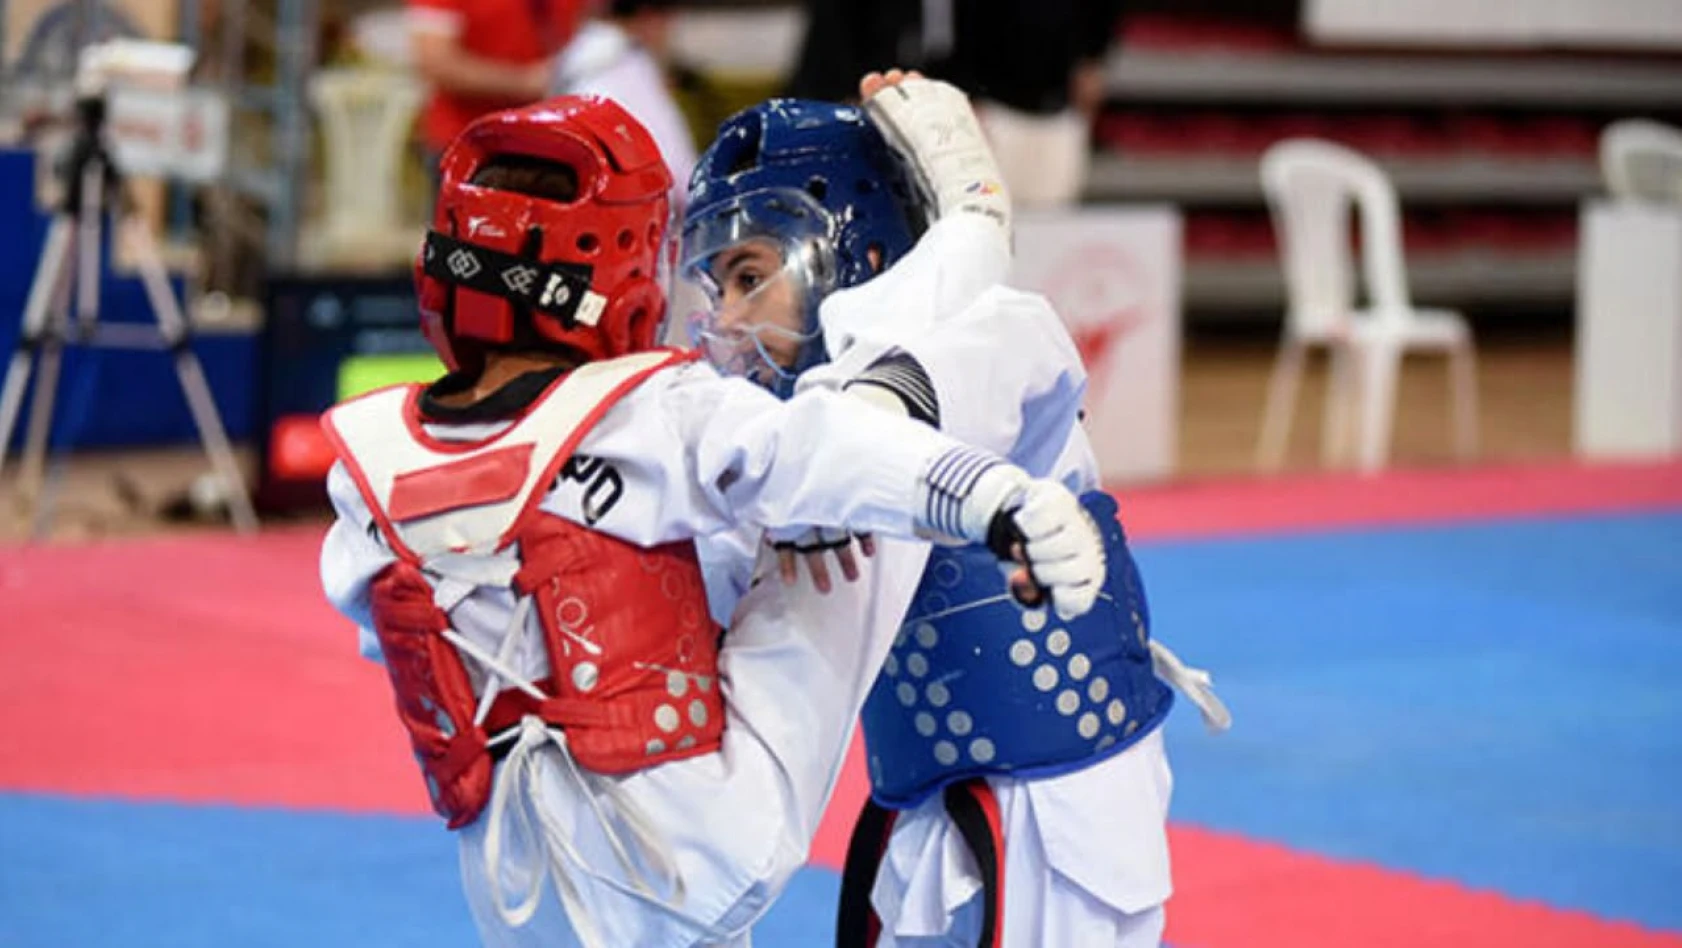 Küre'de taekwondo şöleni yaşanacak